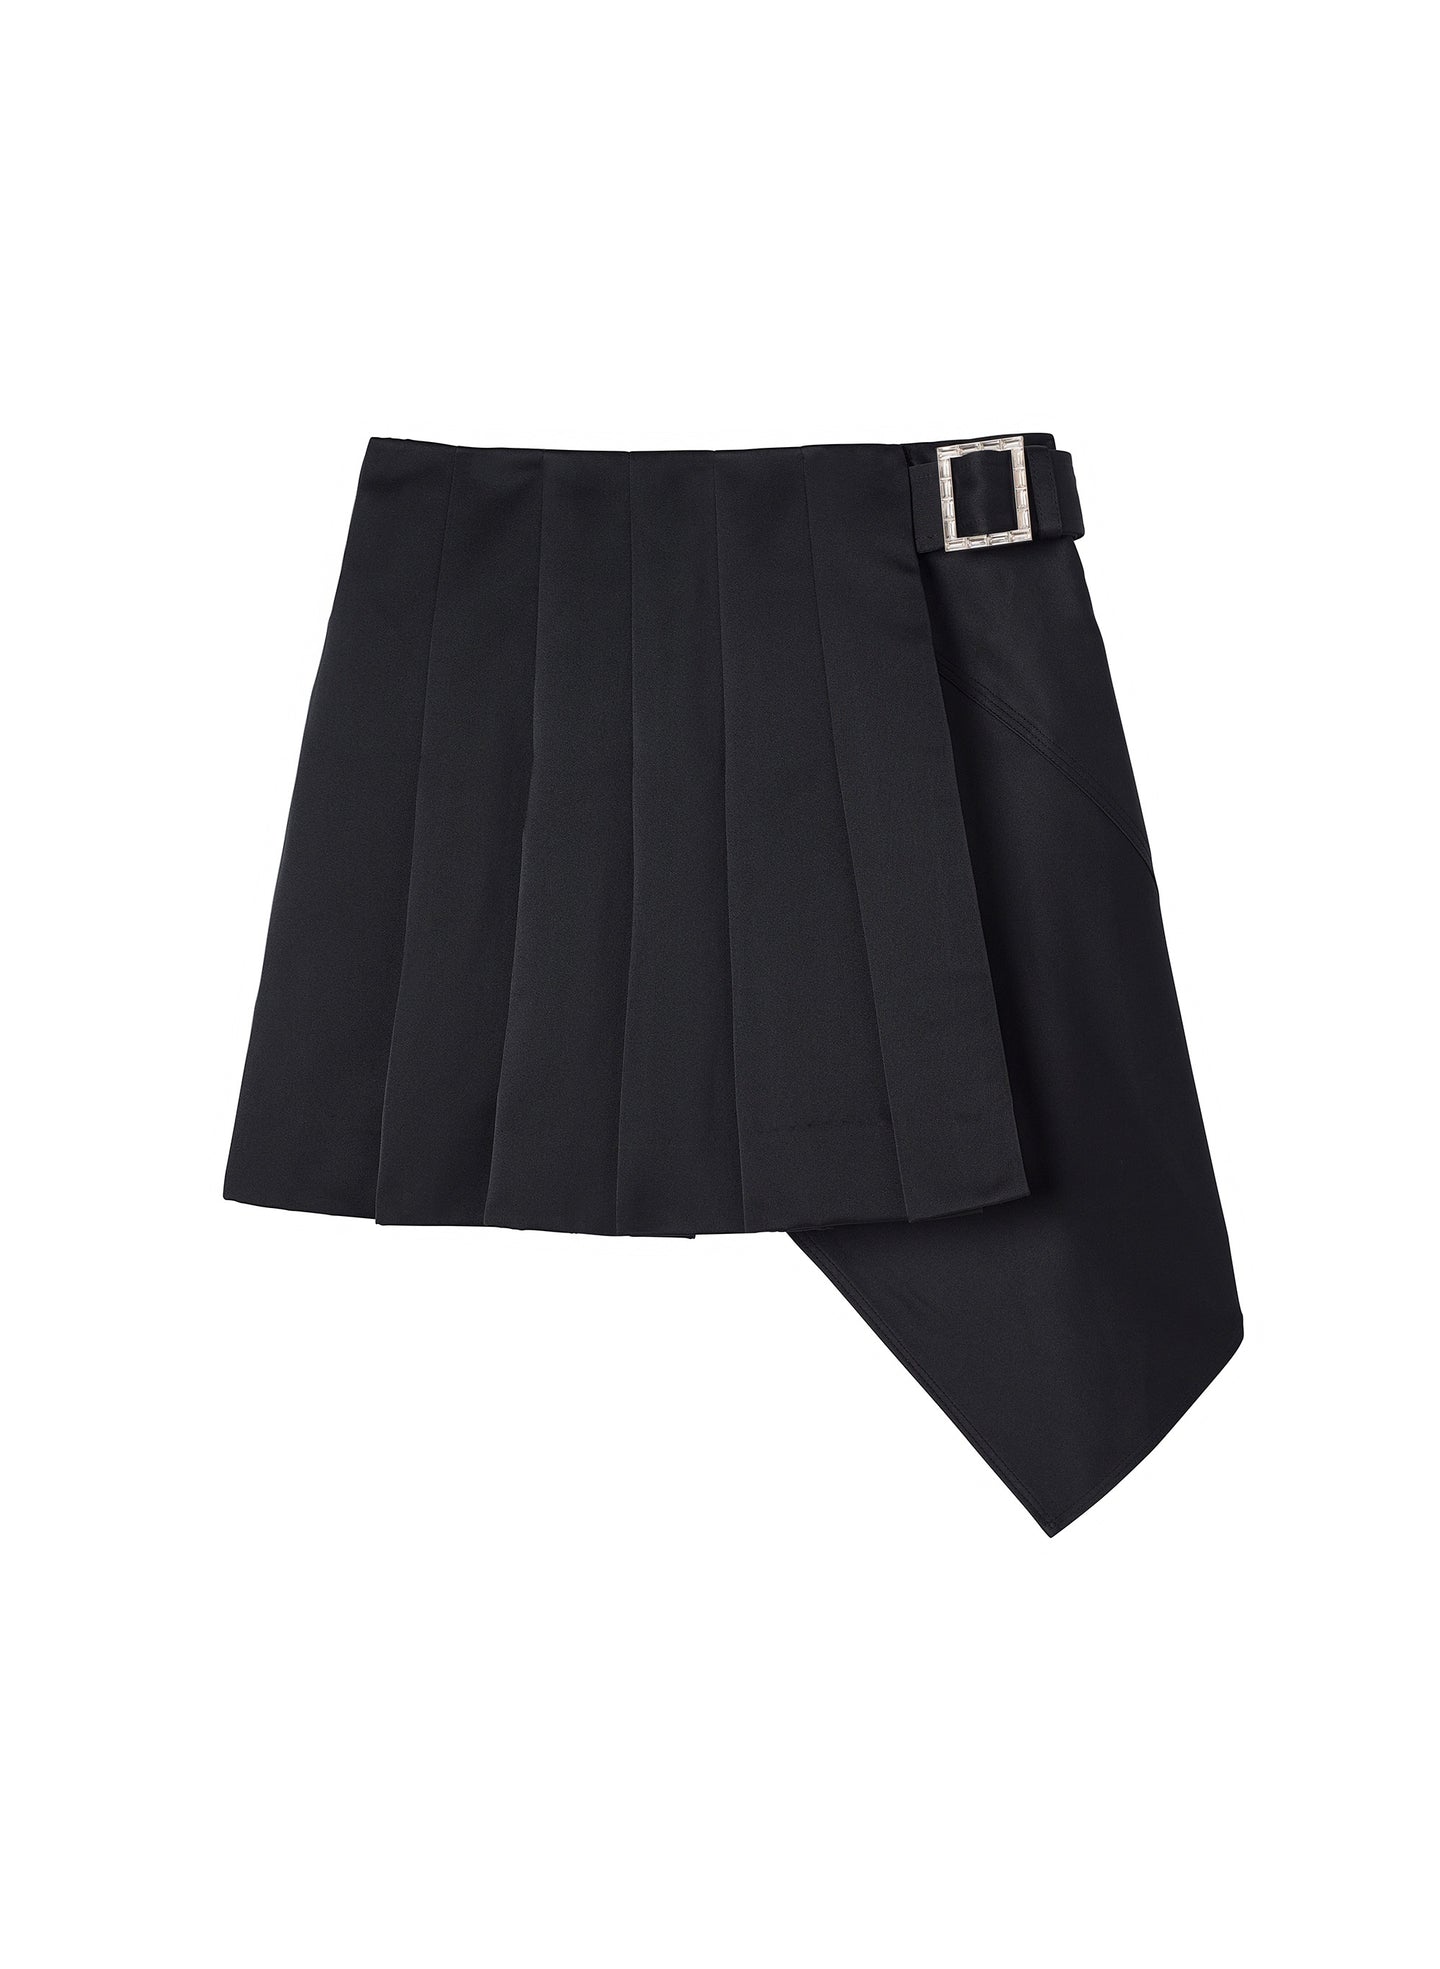 flatlay of black pleated mini skirt